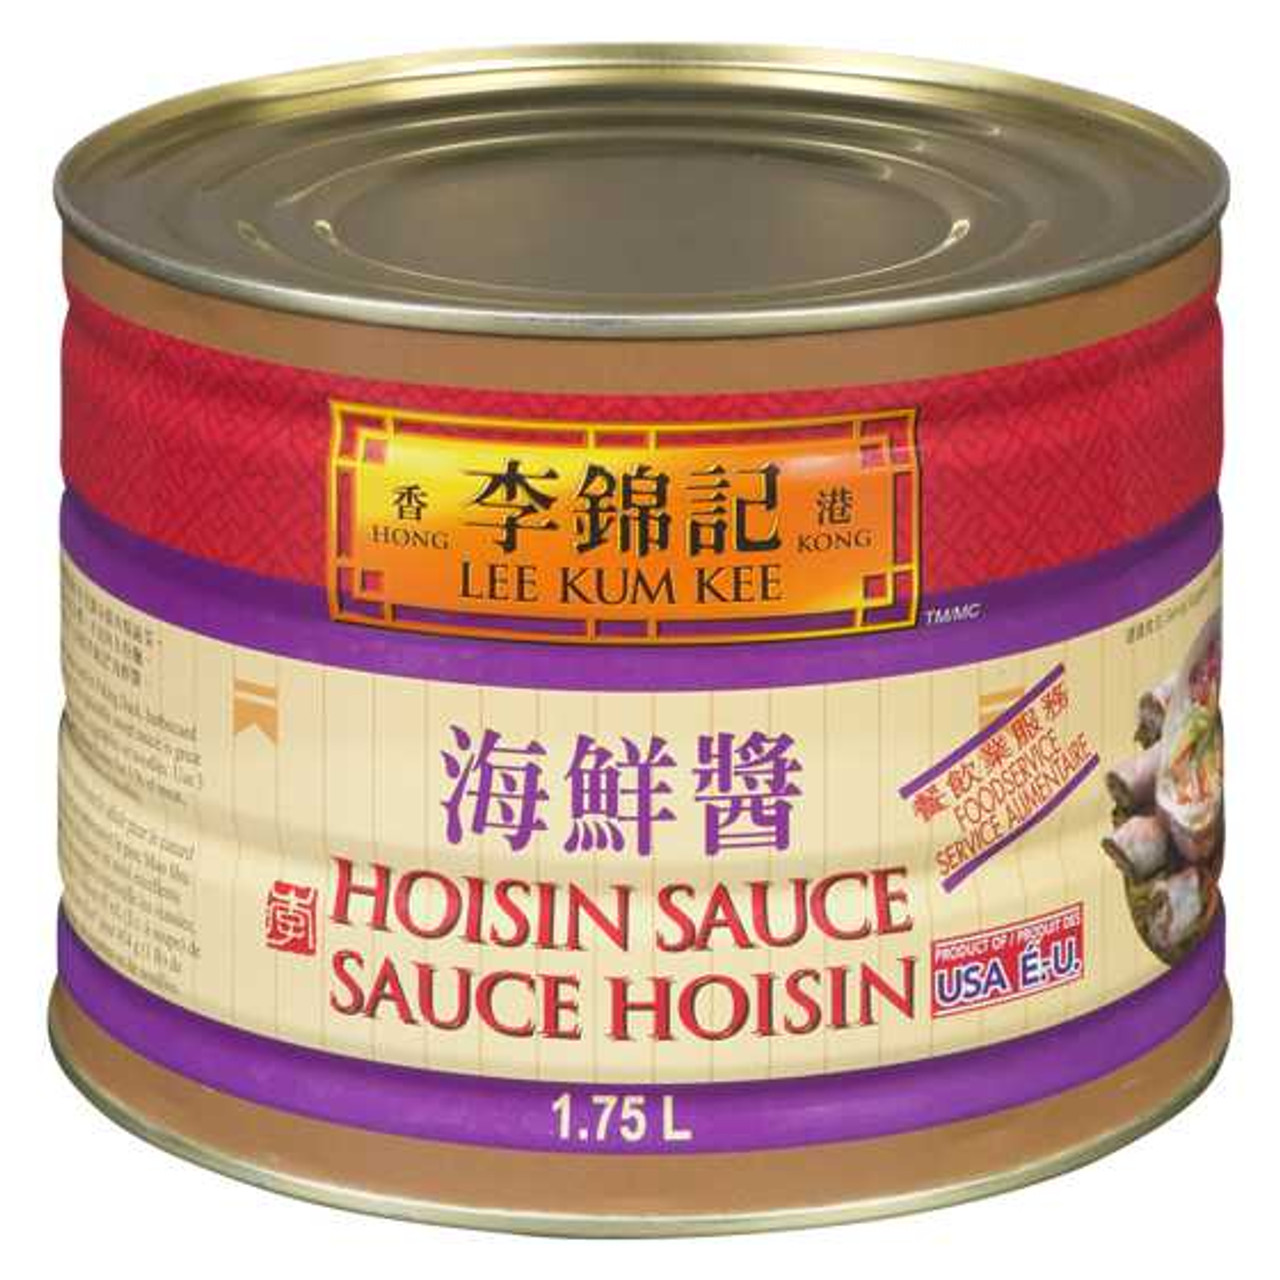 LEE KUM KEE Hoi Sin Sauce 2.27 kg